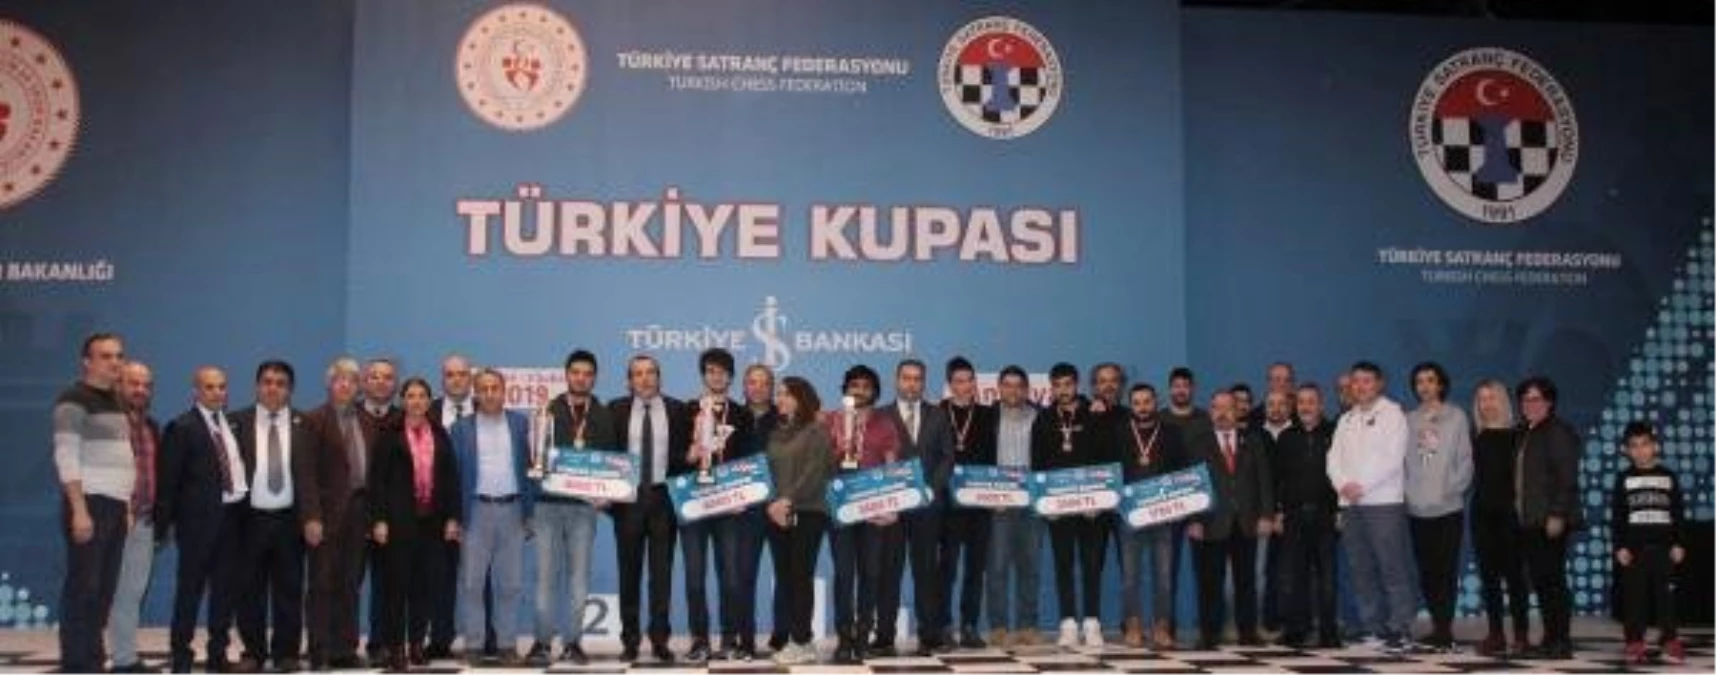 2019 Türkiye Satranç Kupası Sona Erdi